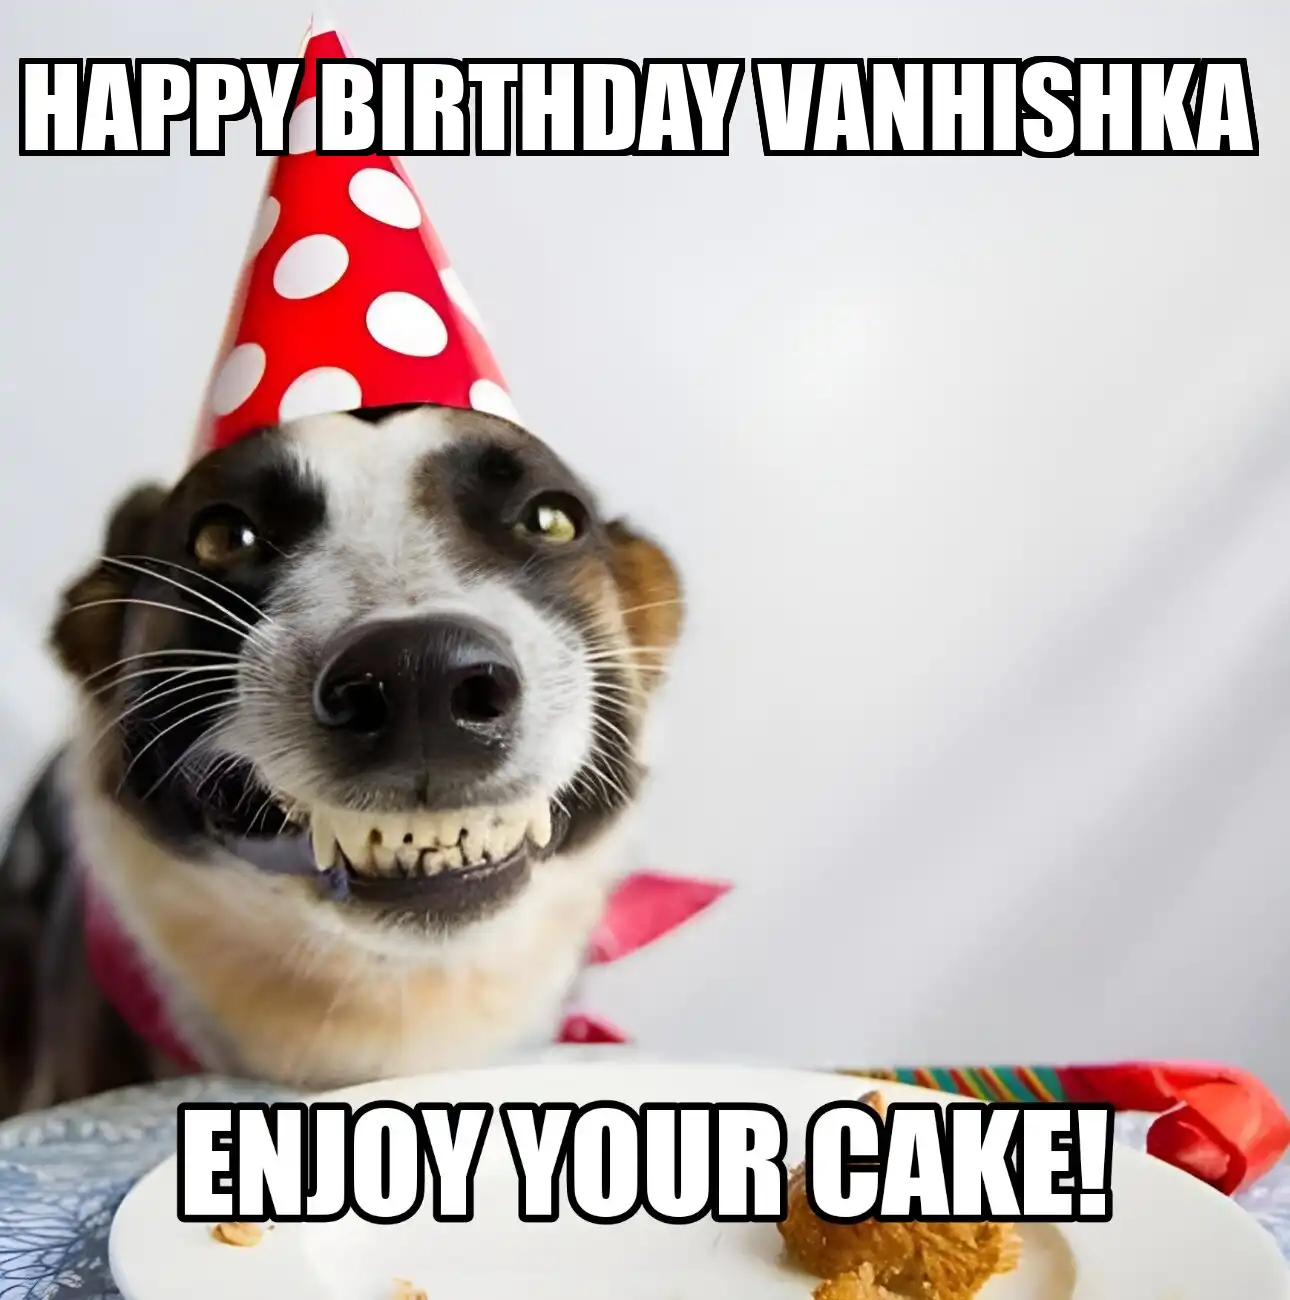 Happy Birthday Vanhishka Enjoy Your Cake Dog Meme